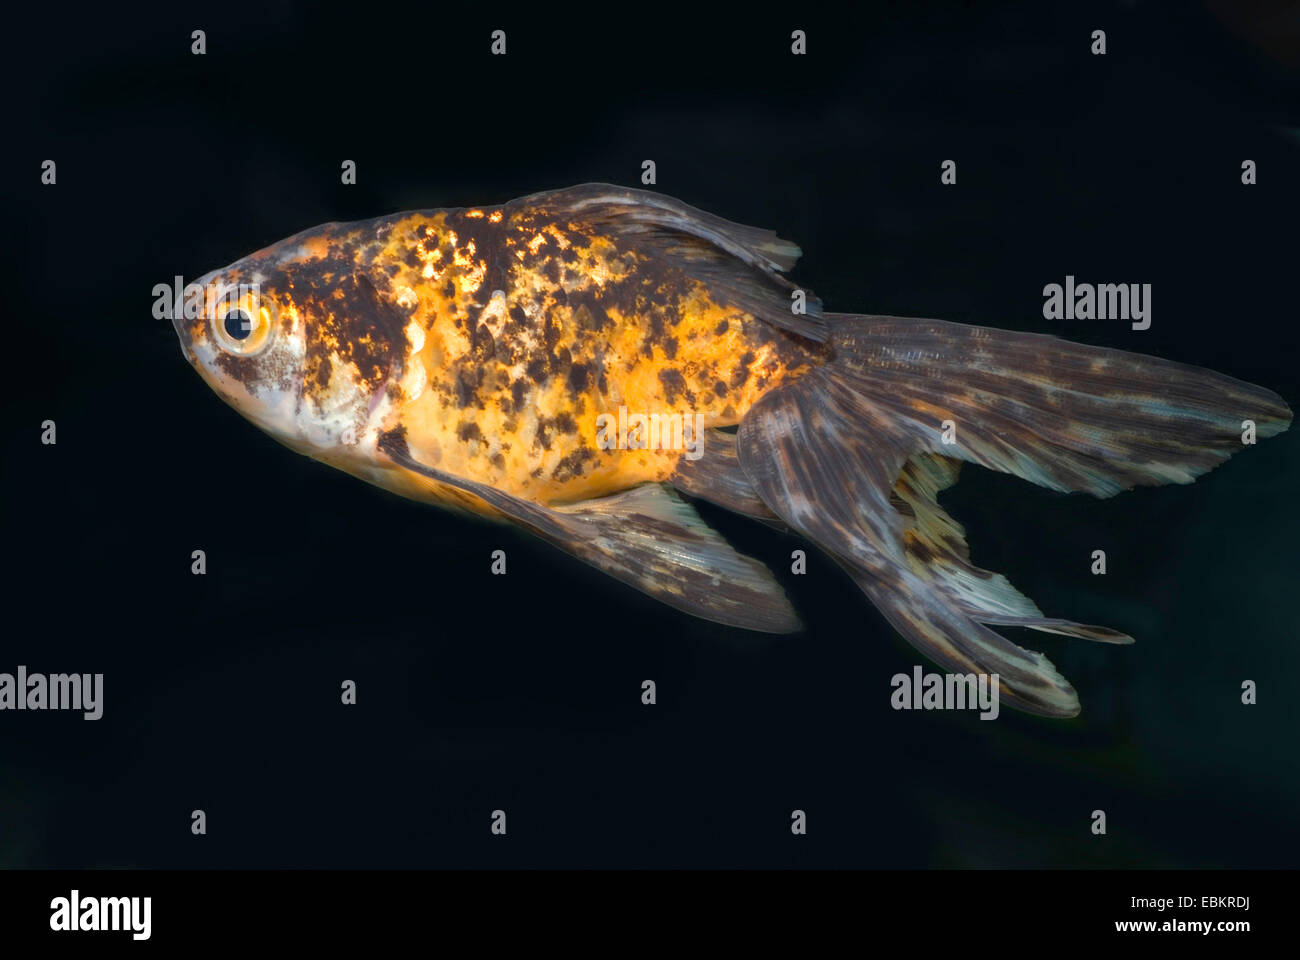 goldfish, common carp (Carassius auratus), breeding form Fringtail calico Stock Photo